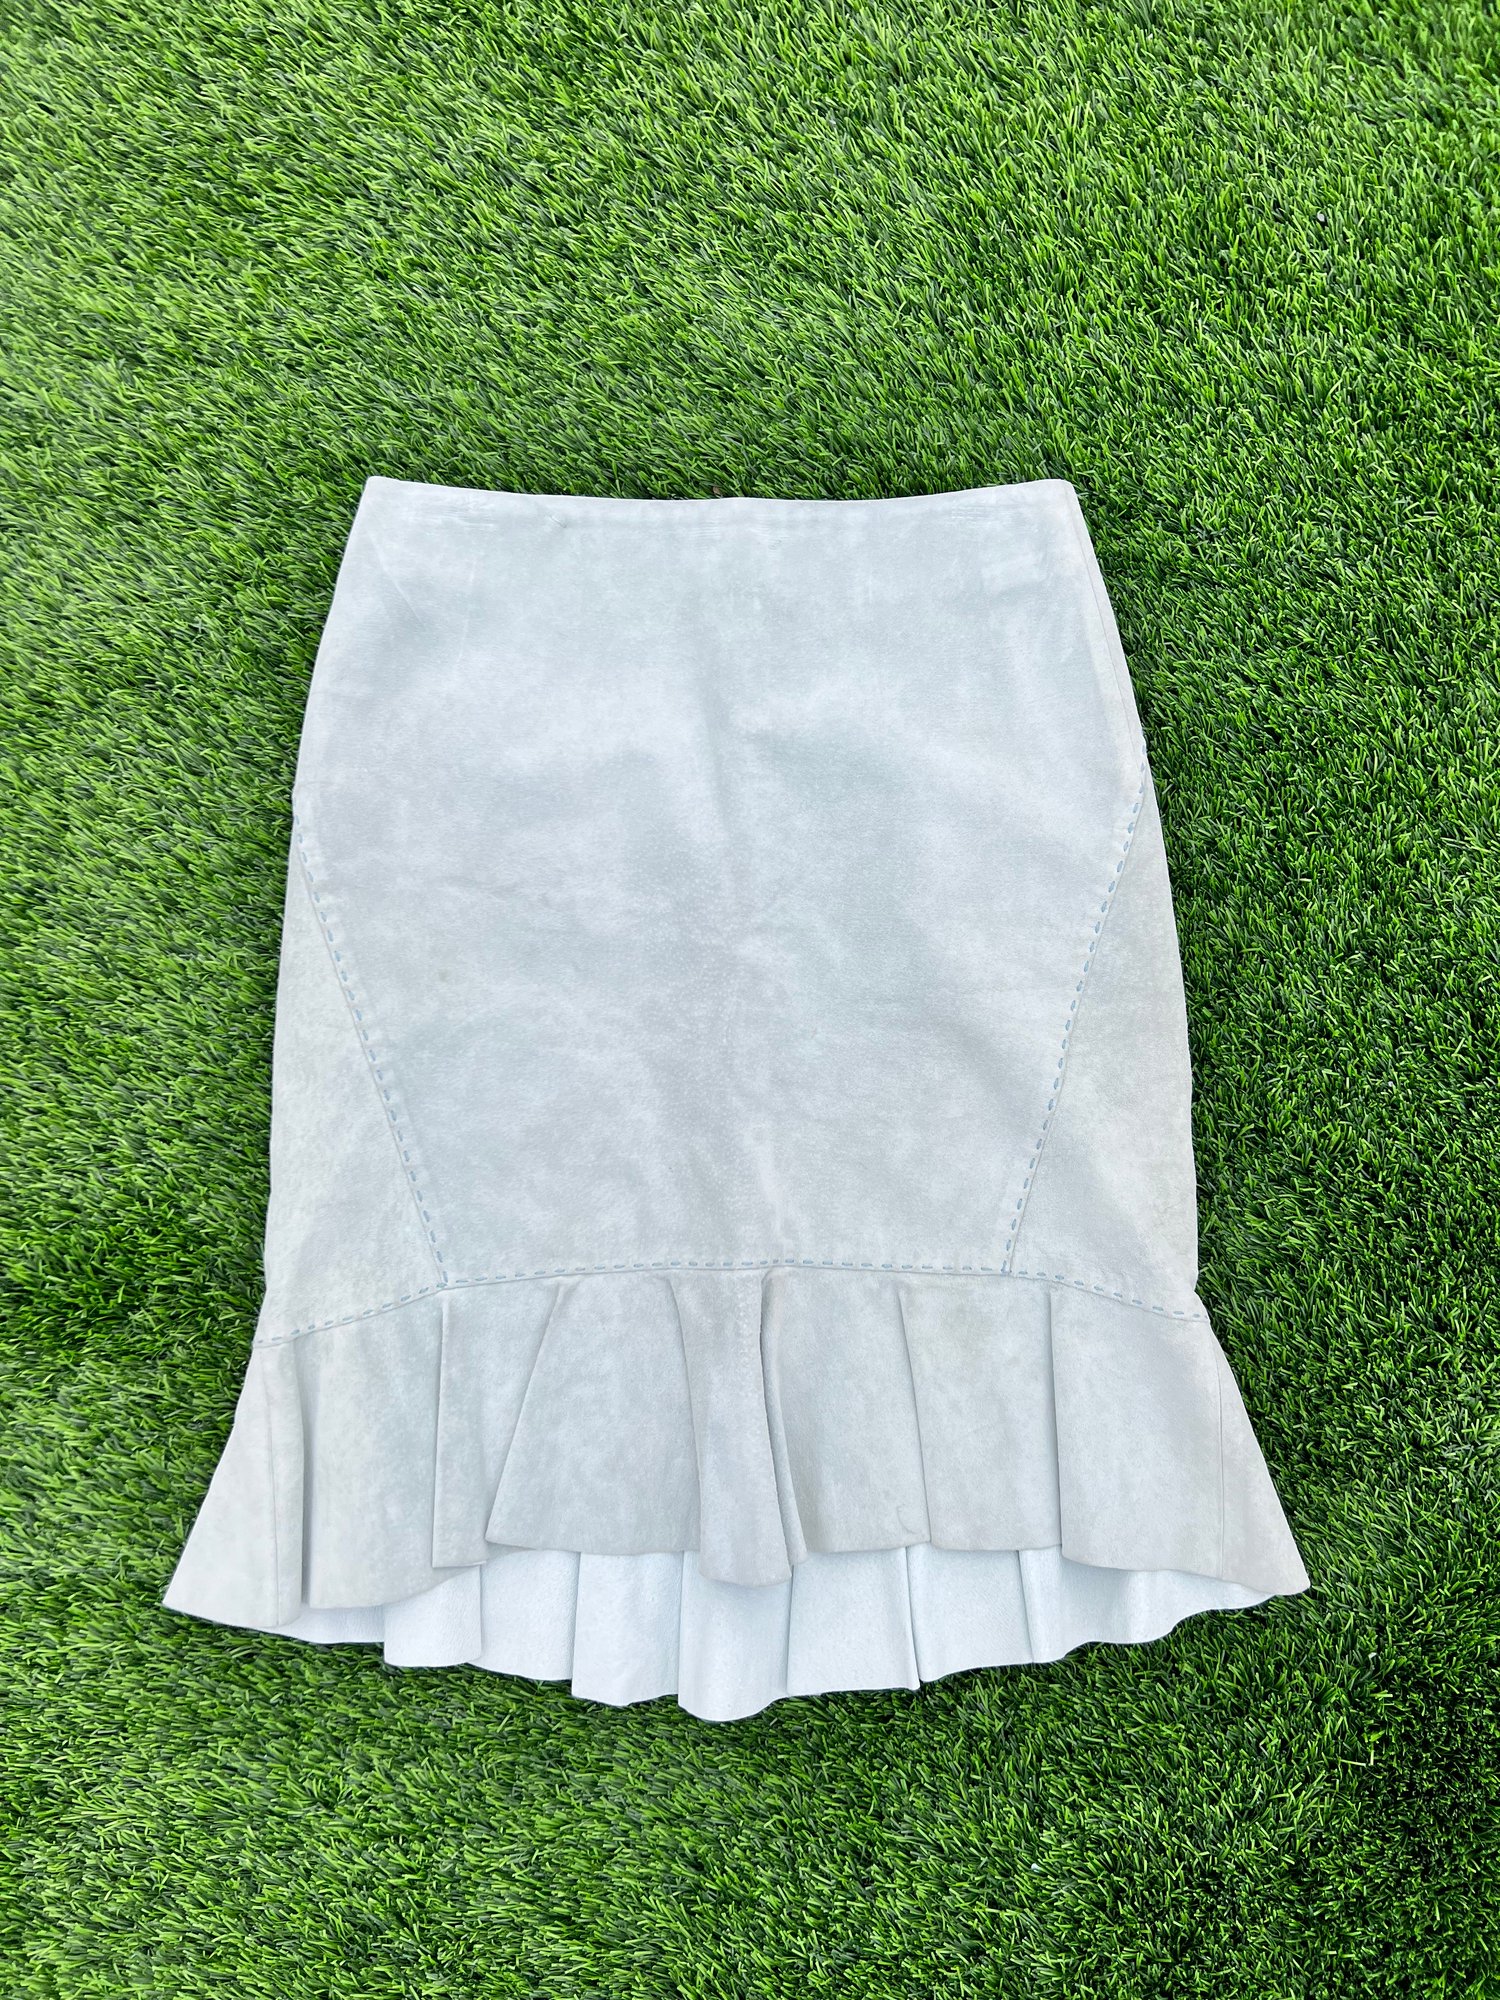 RBF Vintage - Suede Skirt